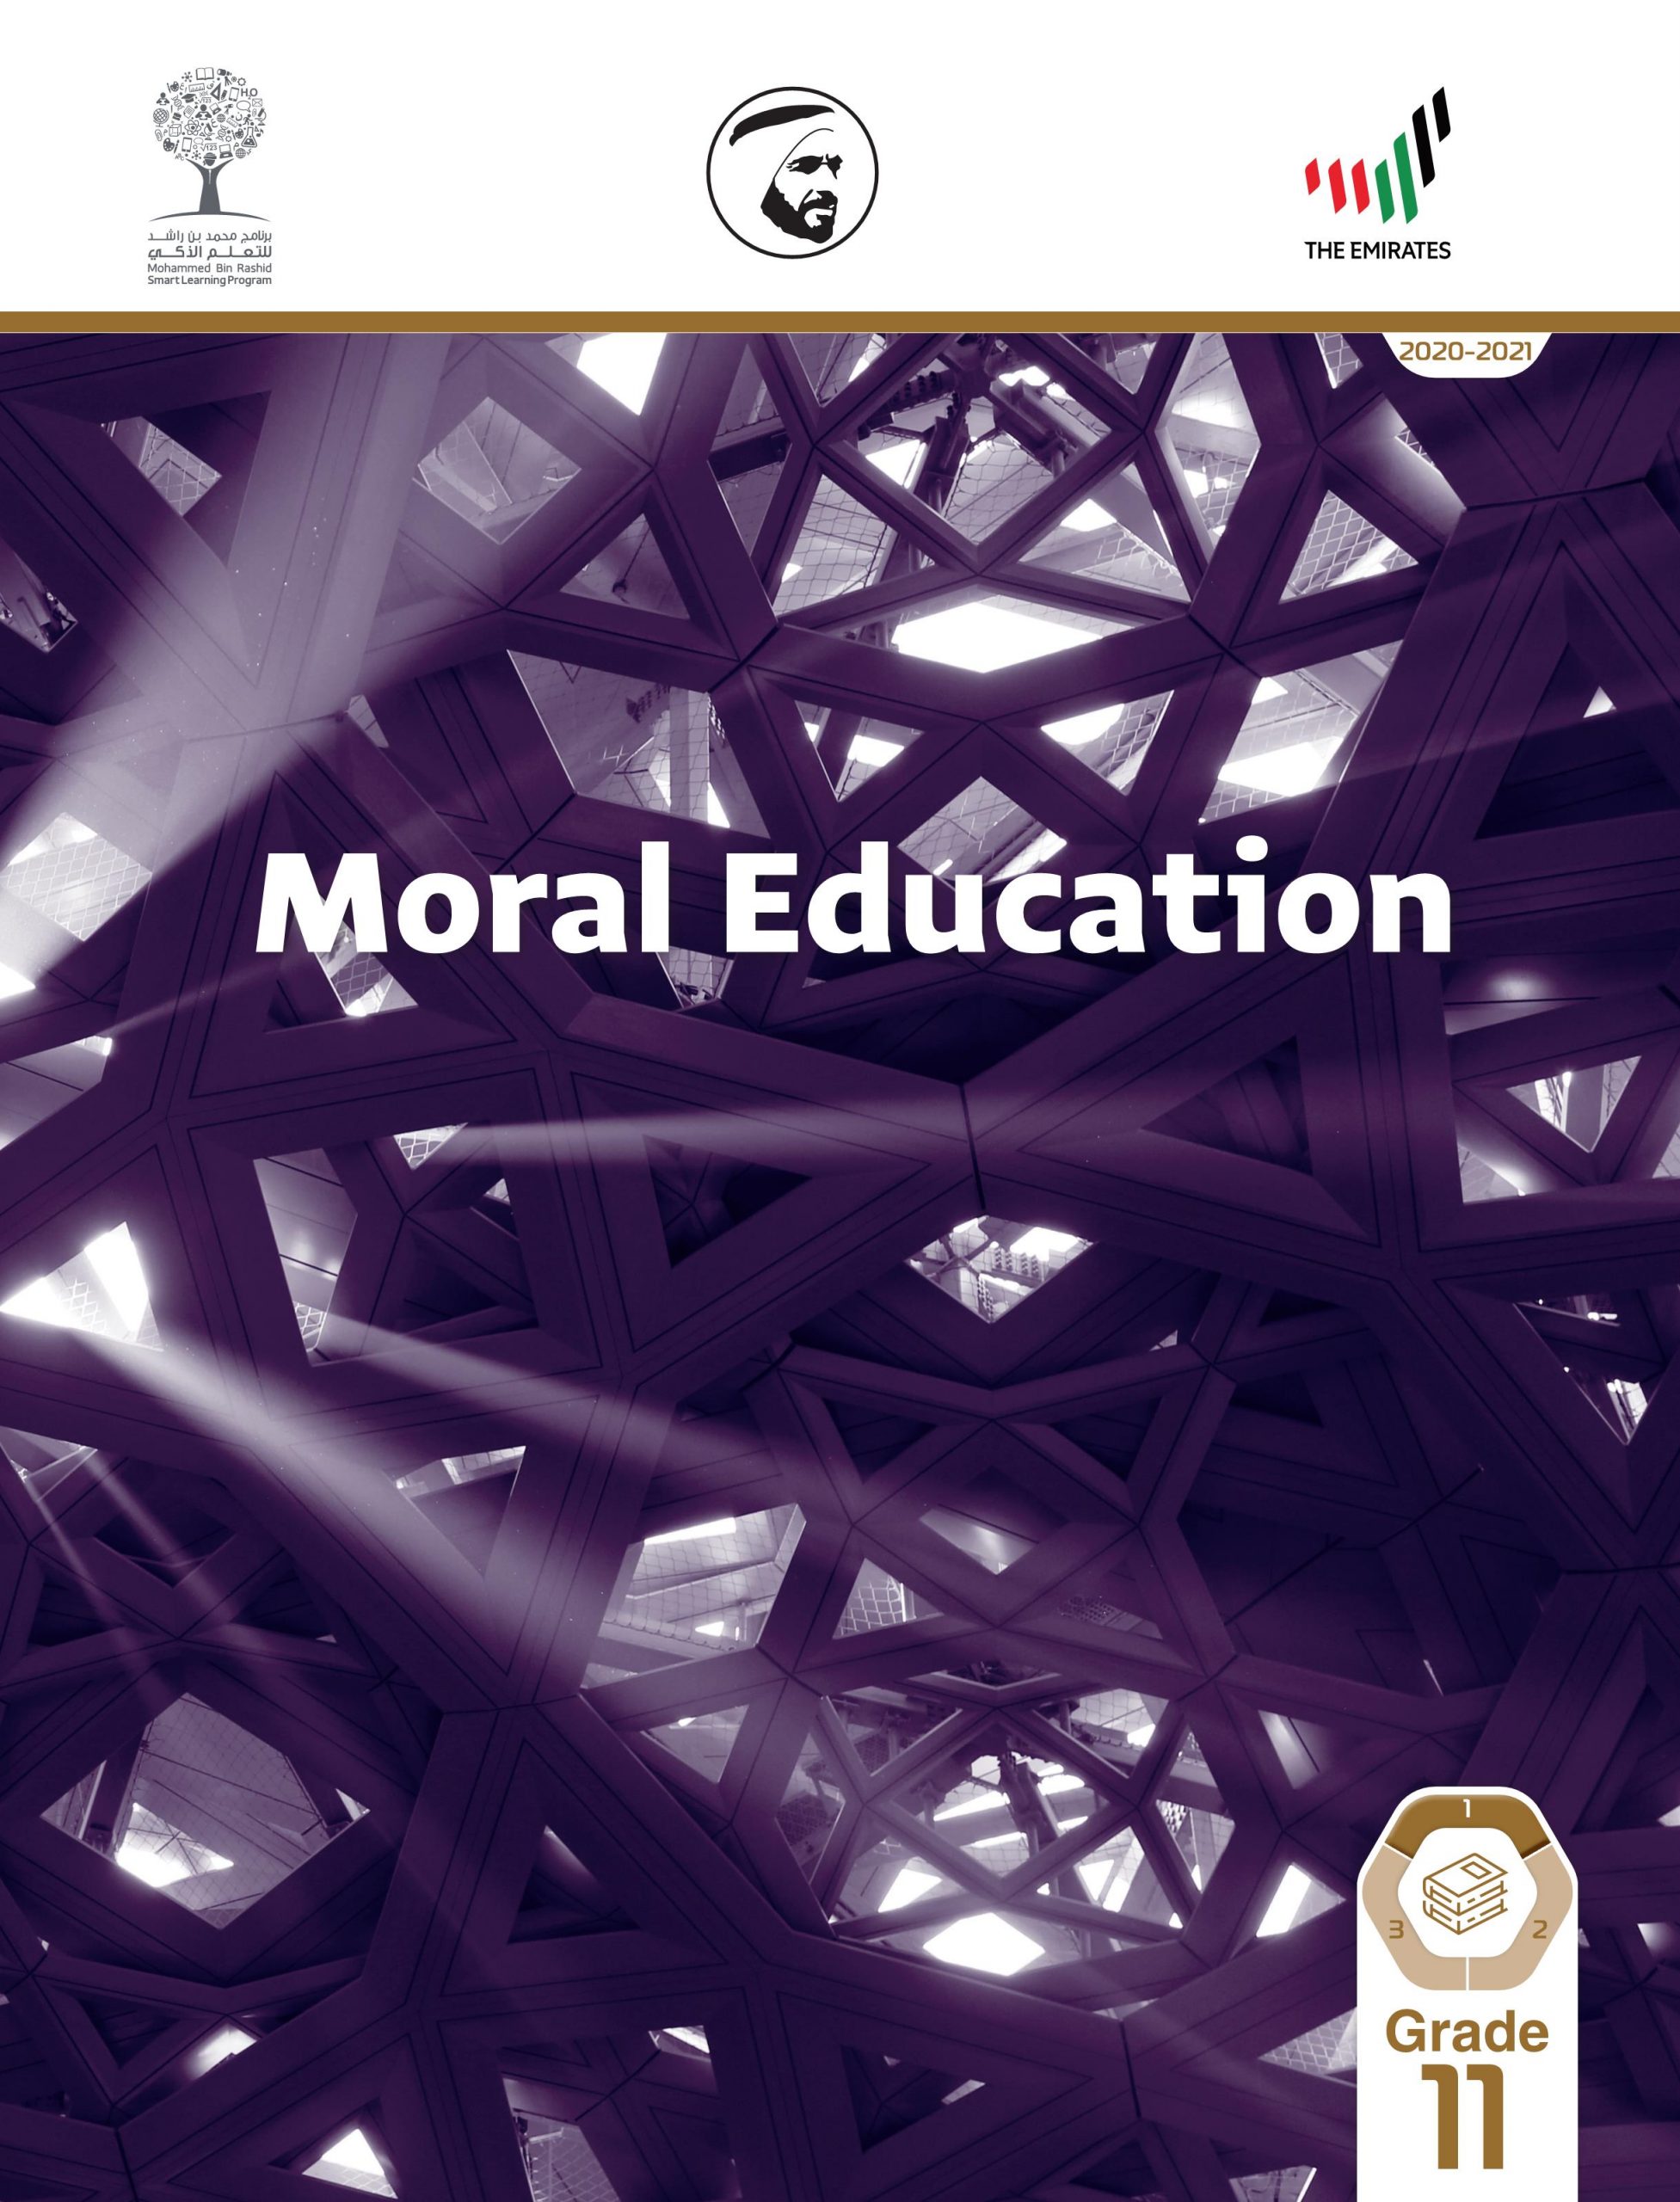 كتاب الطالب بالانجليزي 2020 -2021 للصف الحادي عشر مادة التربية الاخلاقية 